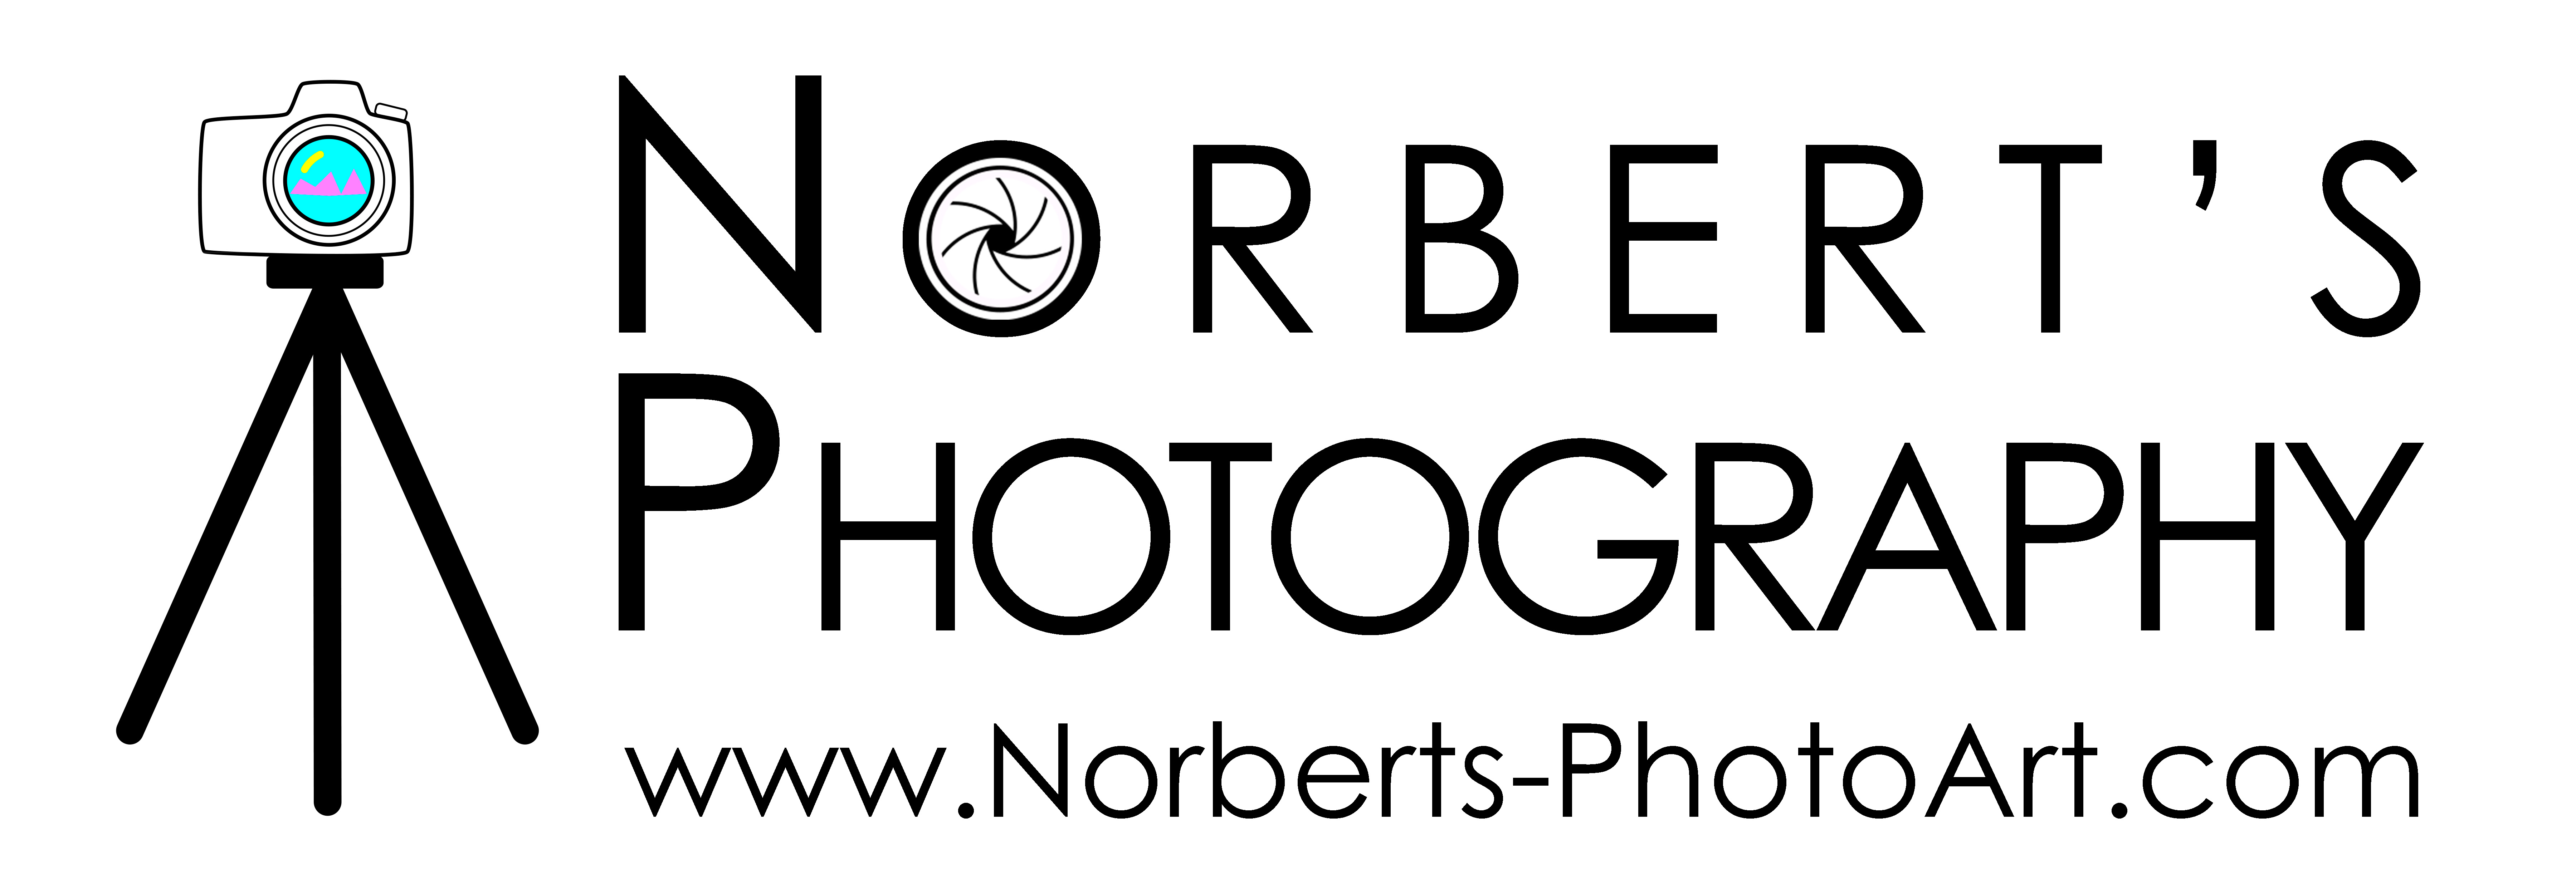 Norberts-PhotoArt